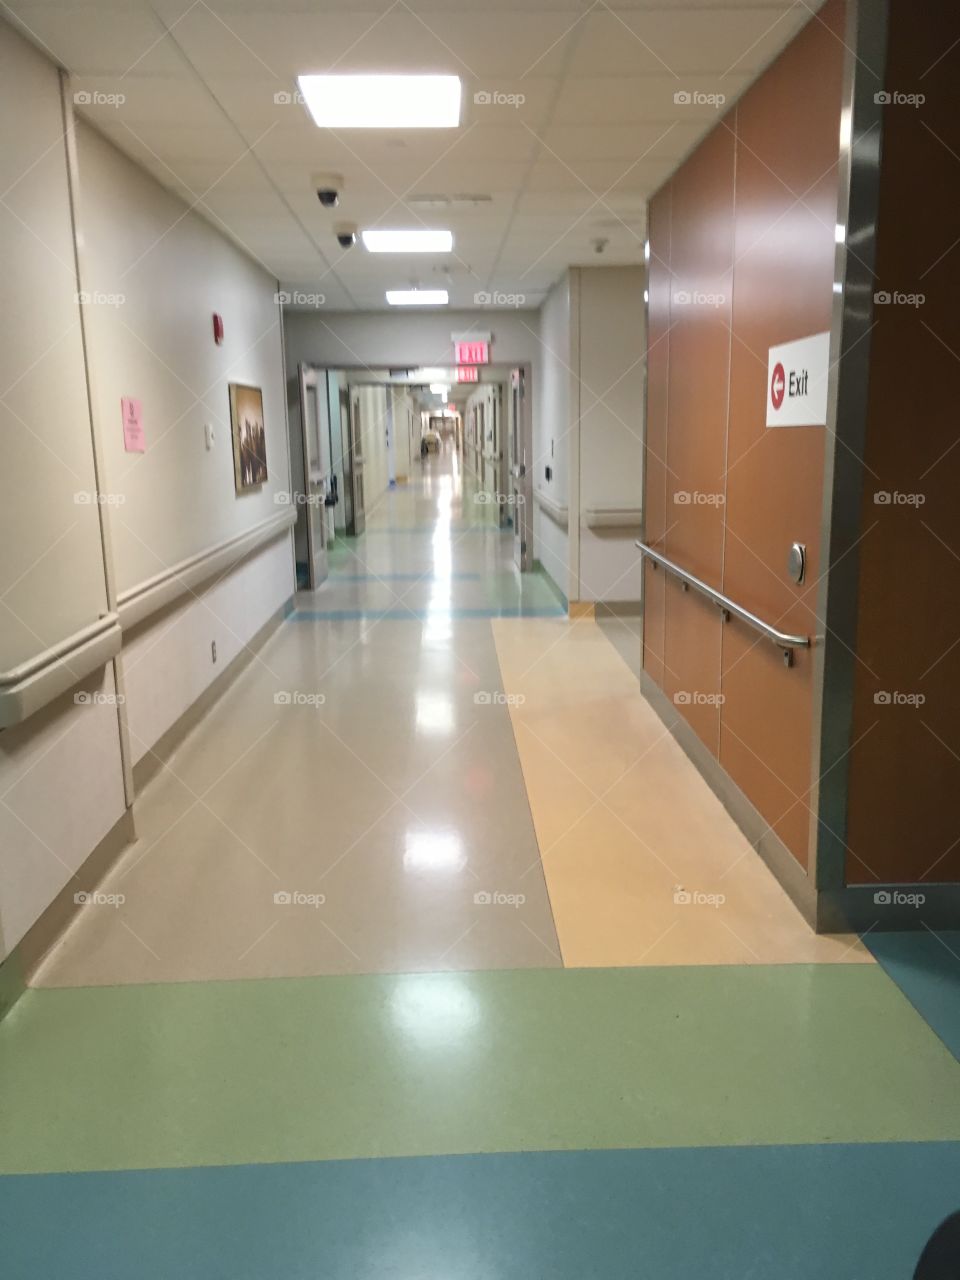 Endless hallway